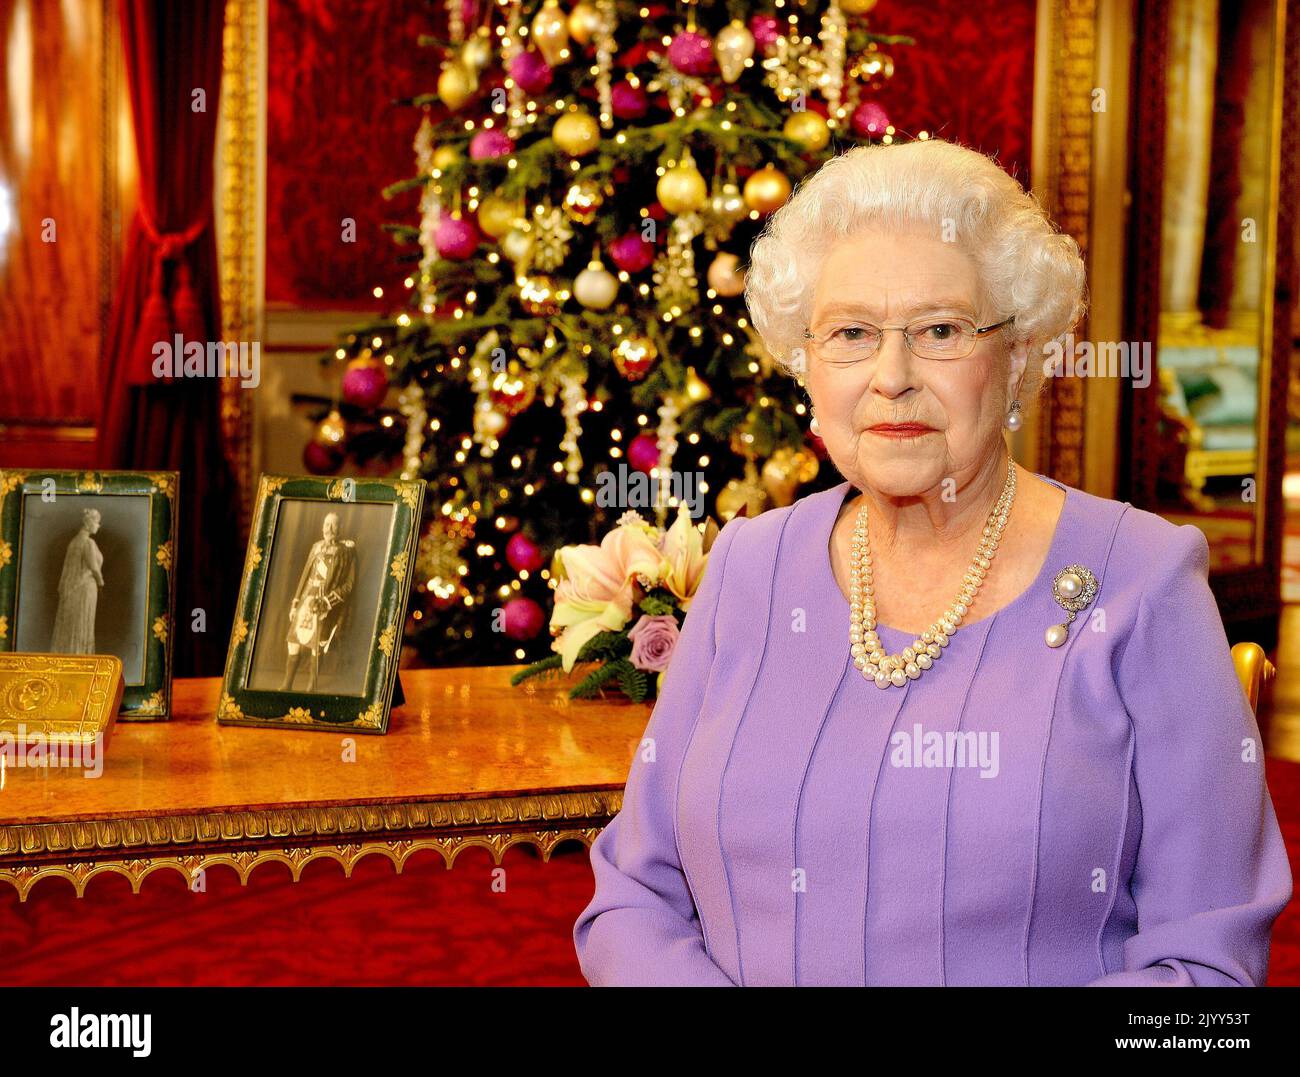 Foto de archivo de fecha 25/12/2014 de la Reina Isabel II parada en el State Dining Room del Palacio de Buckingham, Londres, después de grabar su emisión de televisión del día de Navidad a la Commonwealth. Fecha de emisión: Jueves 8 de septiembre de 2022. Foto de stock